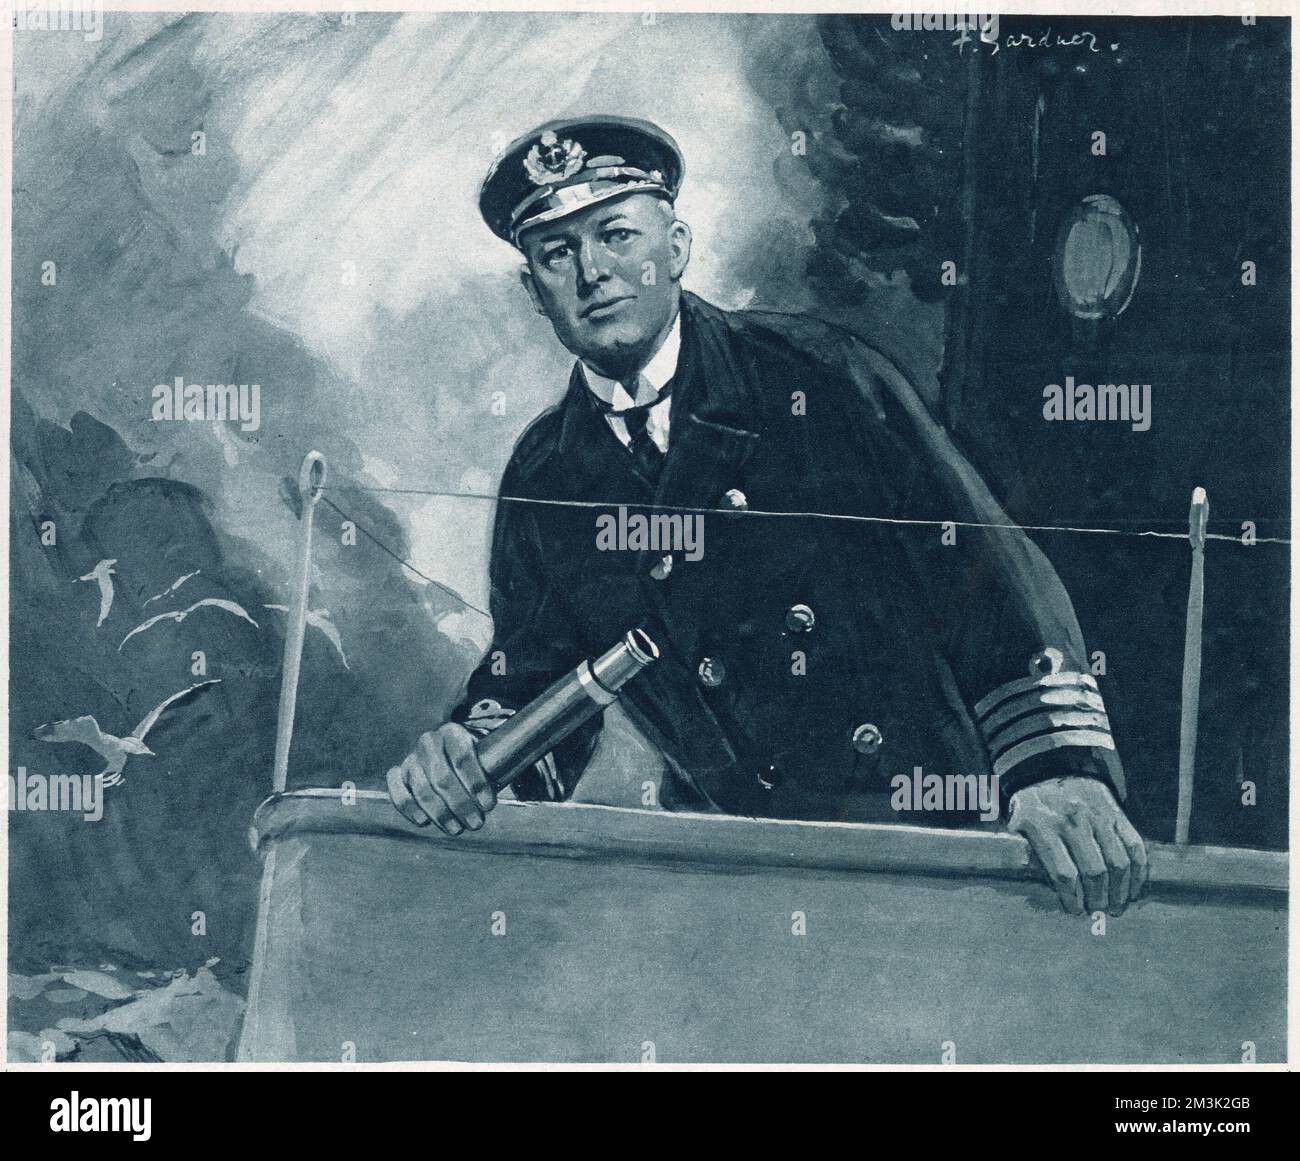 Der Captain der britischen Royal Navy steht auf der Brücke seines Schiffes, mit einem Teleskop in der rechten Hand. Stockfoto